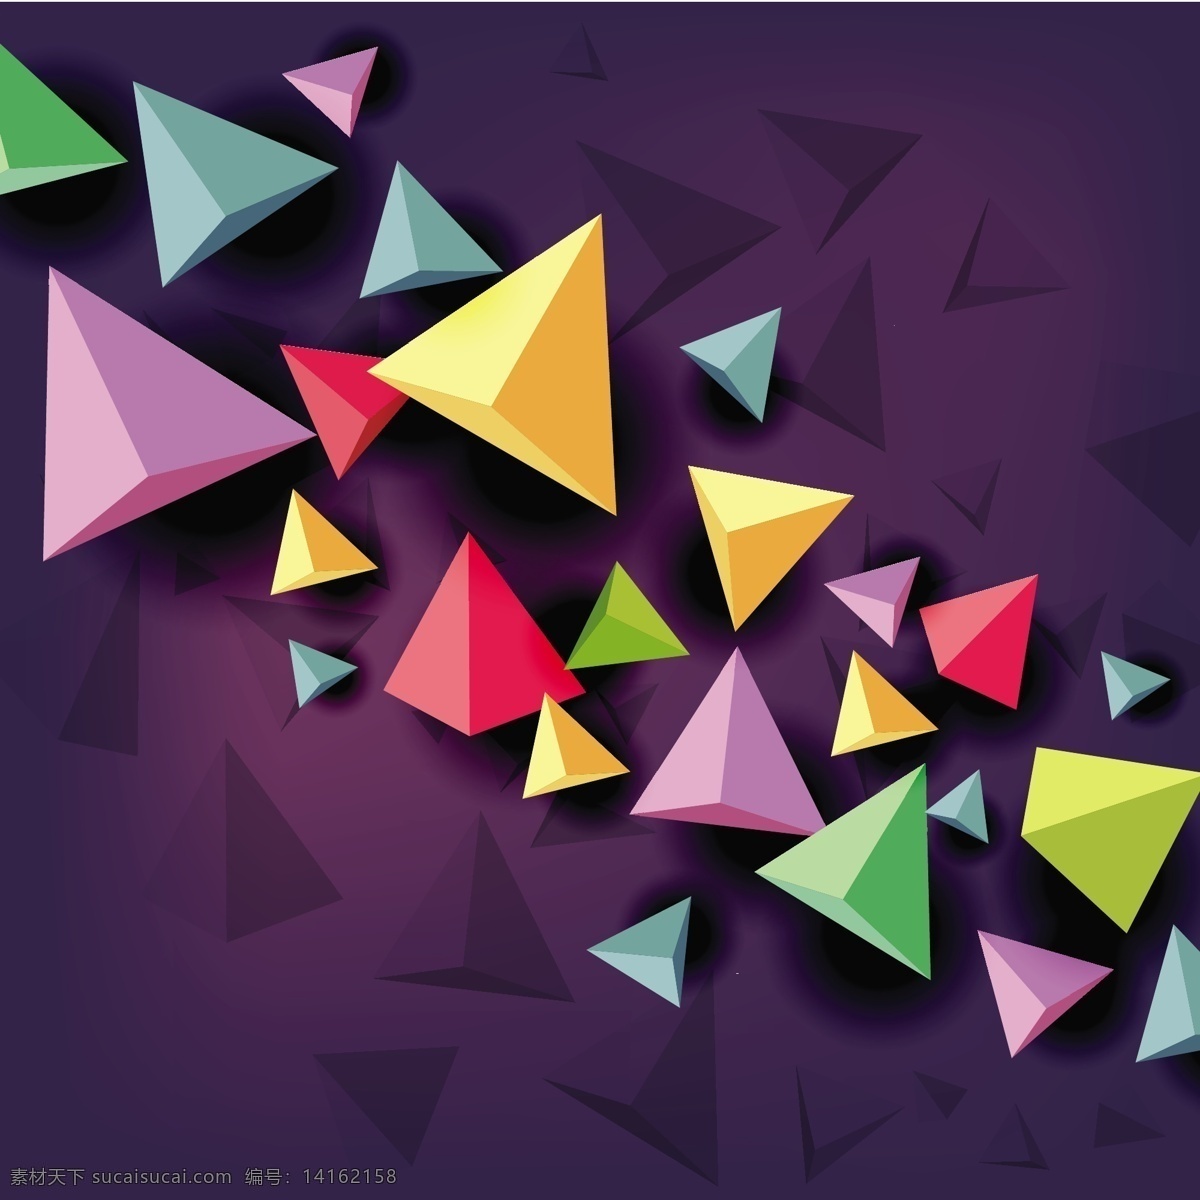 3d 彩色 三角型 背景 图 广告背景 广告 背景素材 三角形 背景图 紫色背景 背景底纹 底纹 创意 几何图形 简约